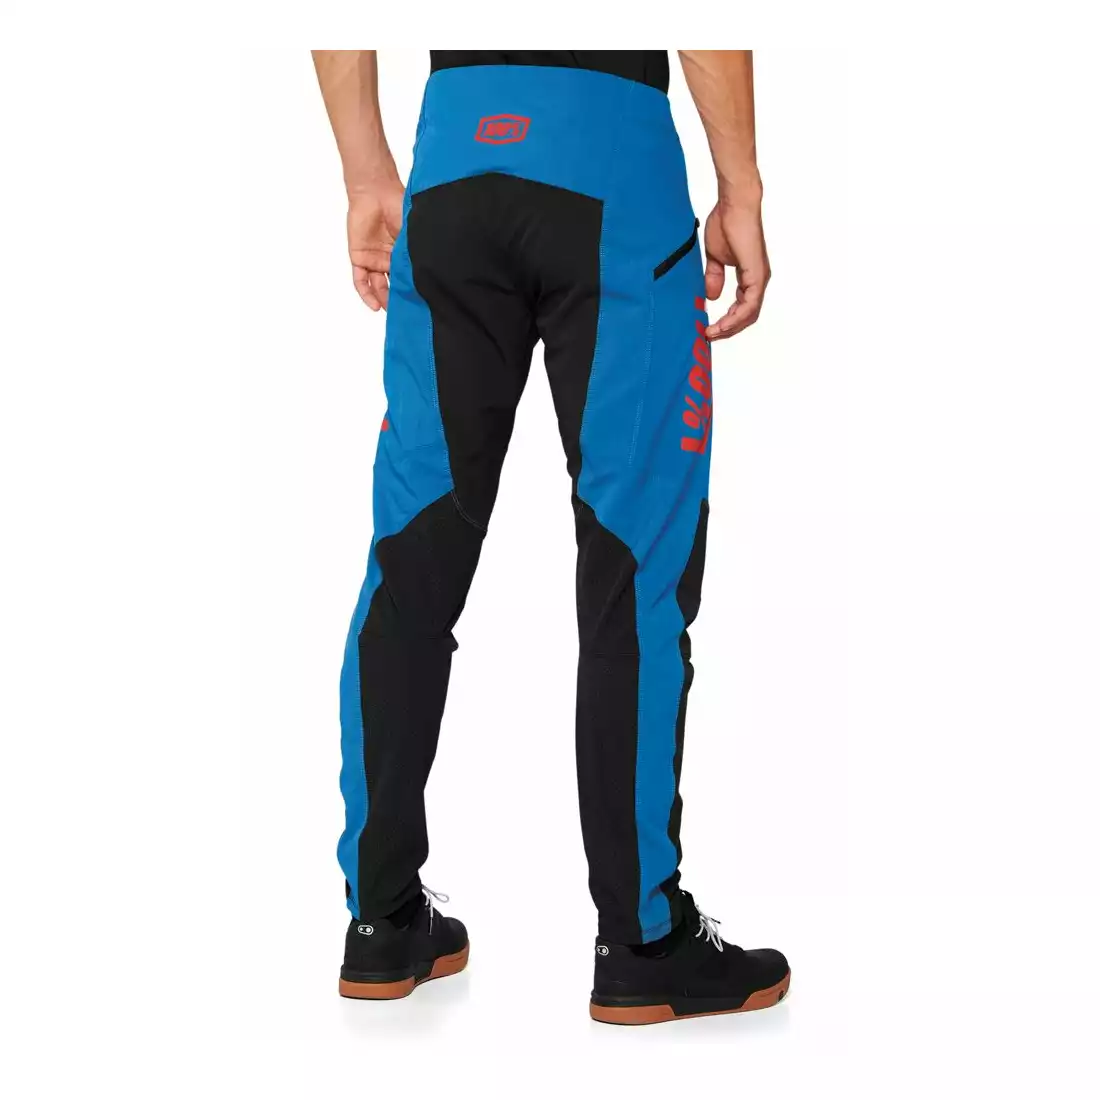 100% R-CORE X Spodnie rowerowe męskie, niebiesko-czarne